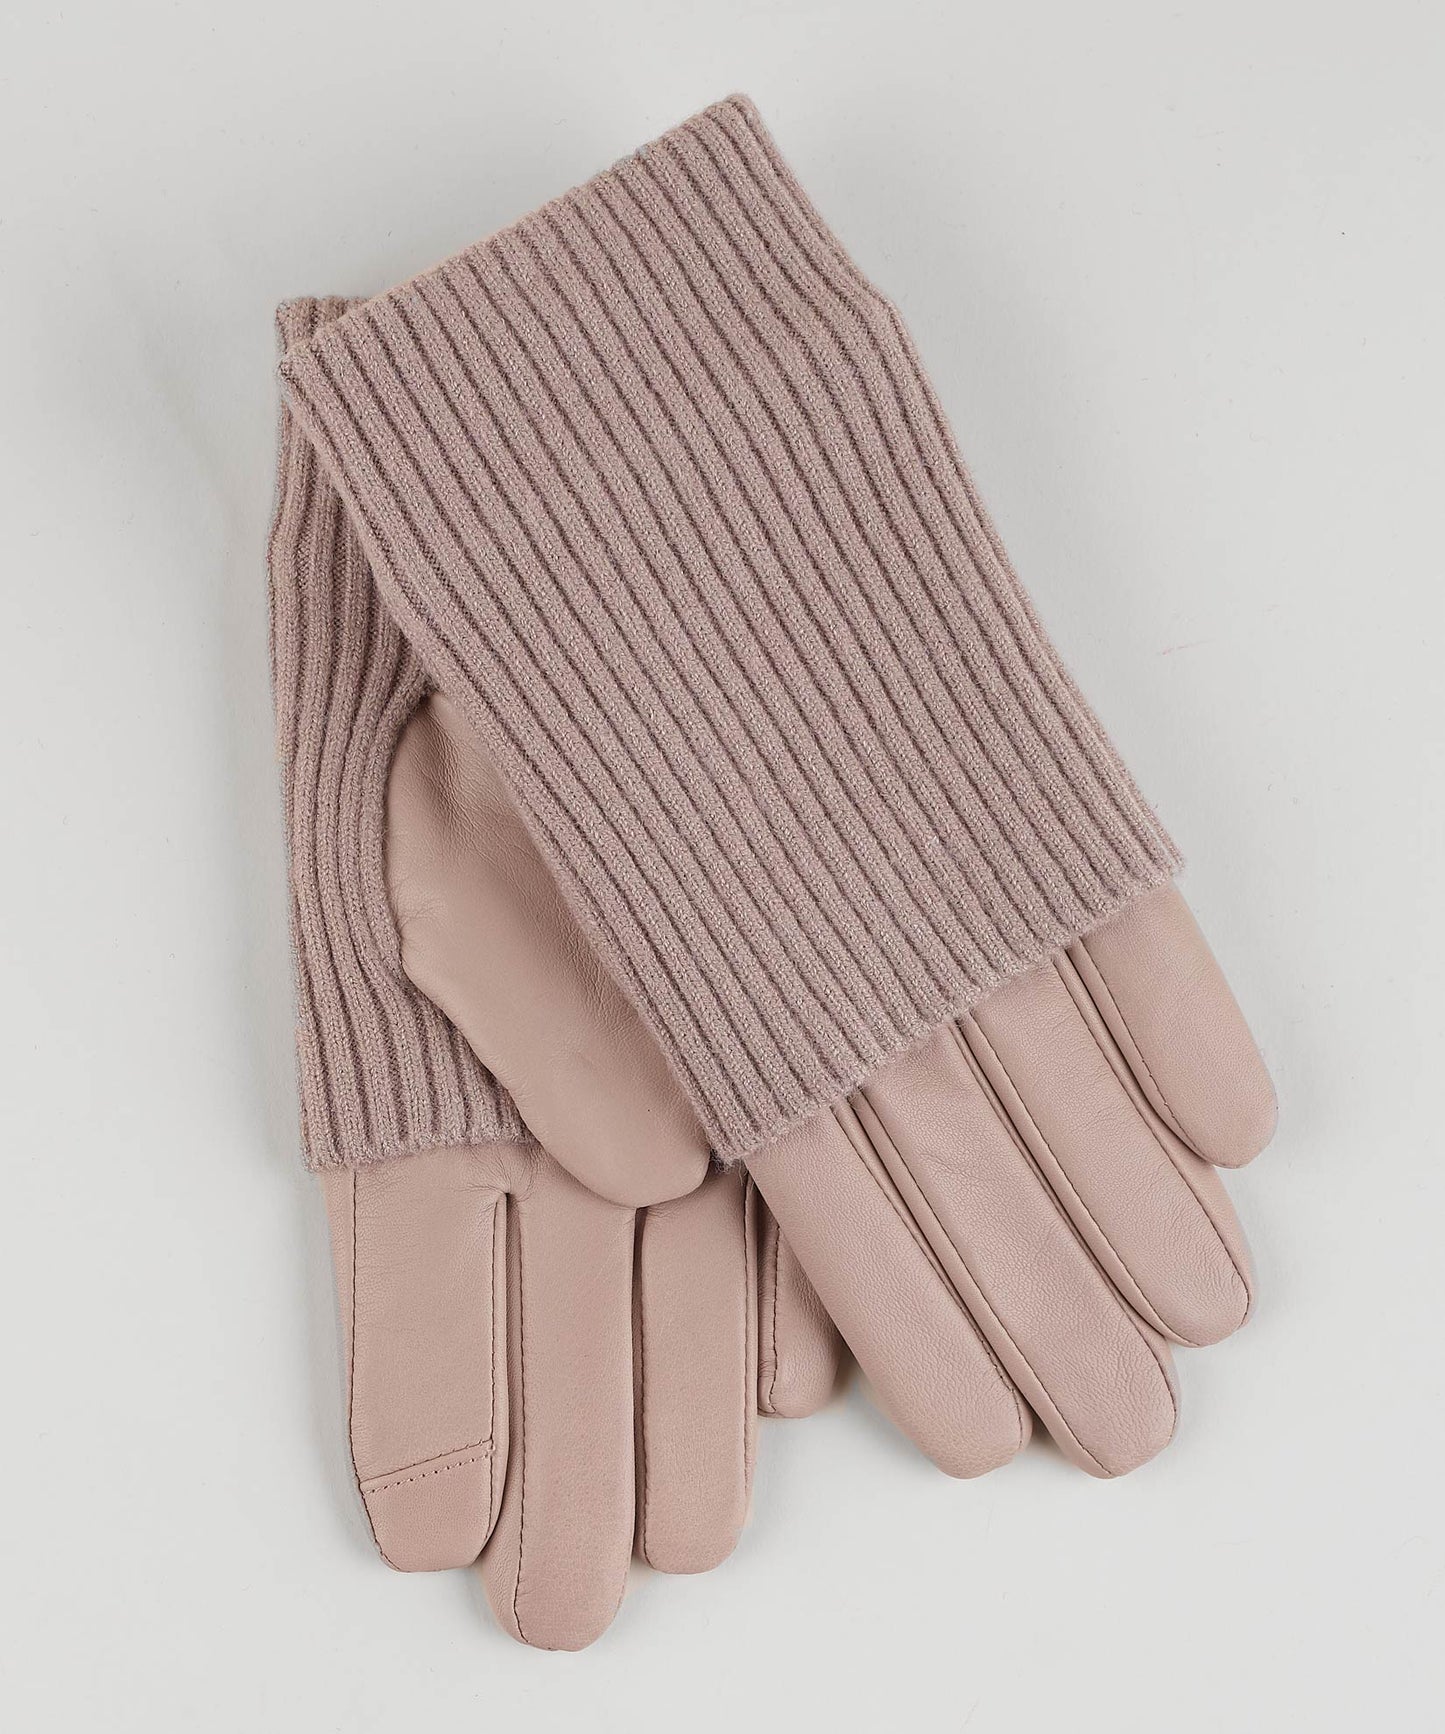 Fold Down Cuff Glove in color Teak